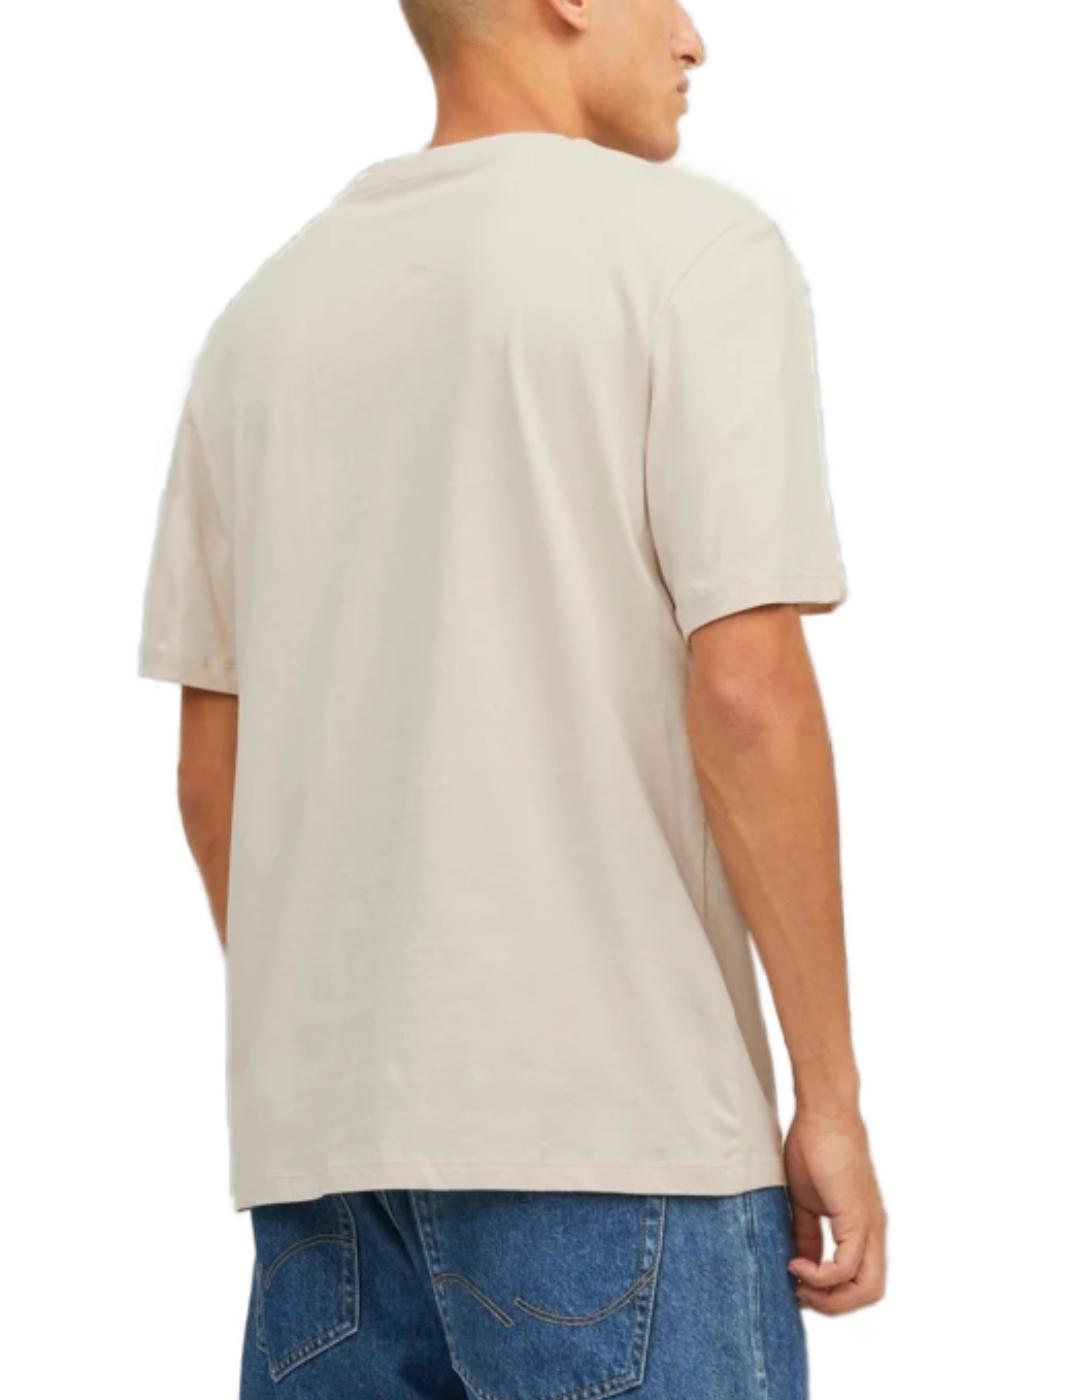 Camiseta Jack&Jones Rafterlife beige manga corta de hombre